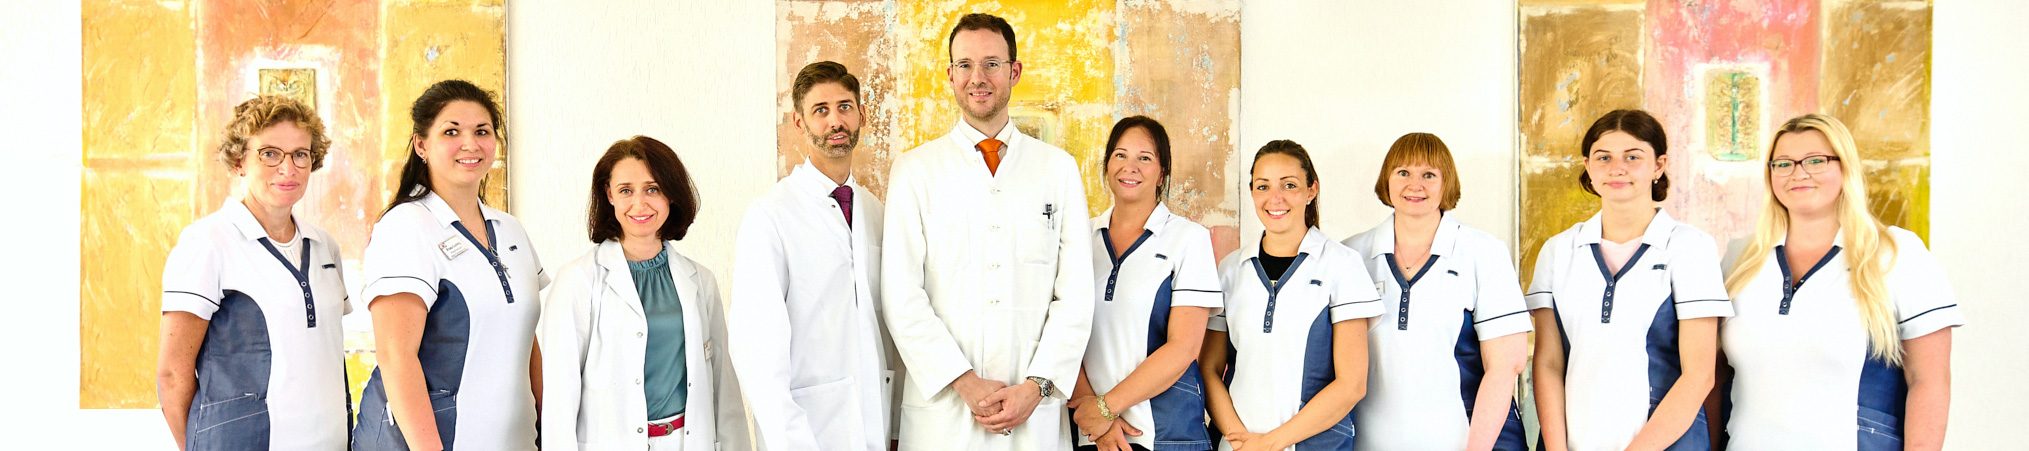 Augenarztpraxis Bonn Team